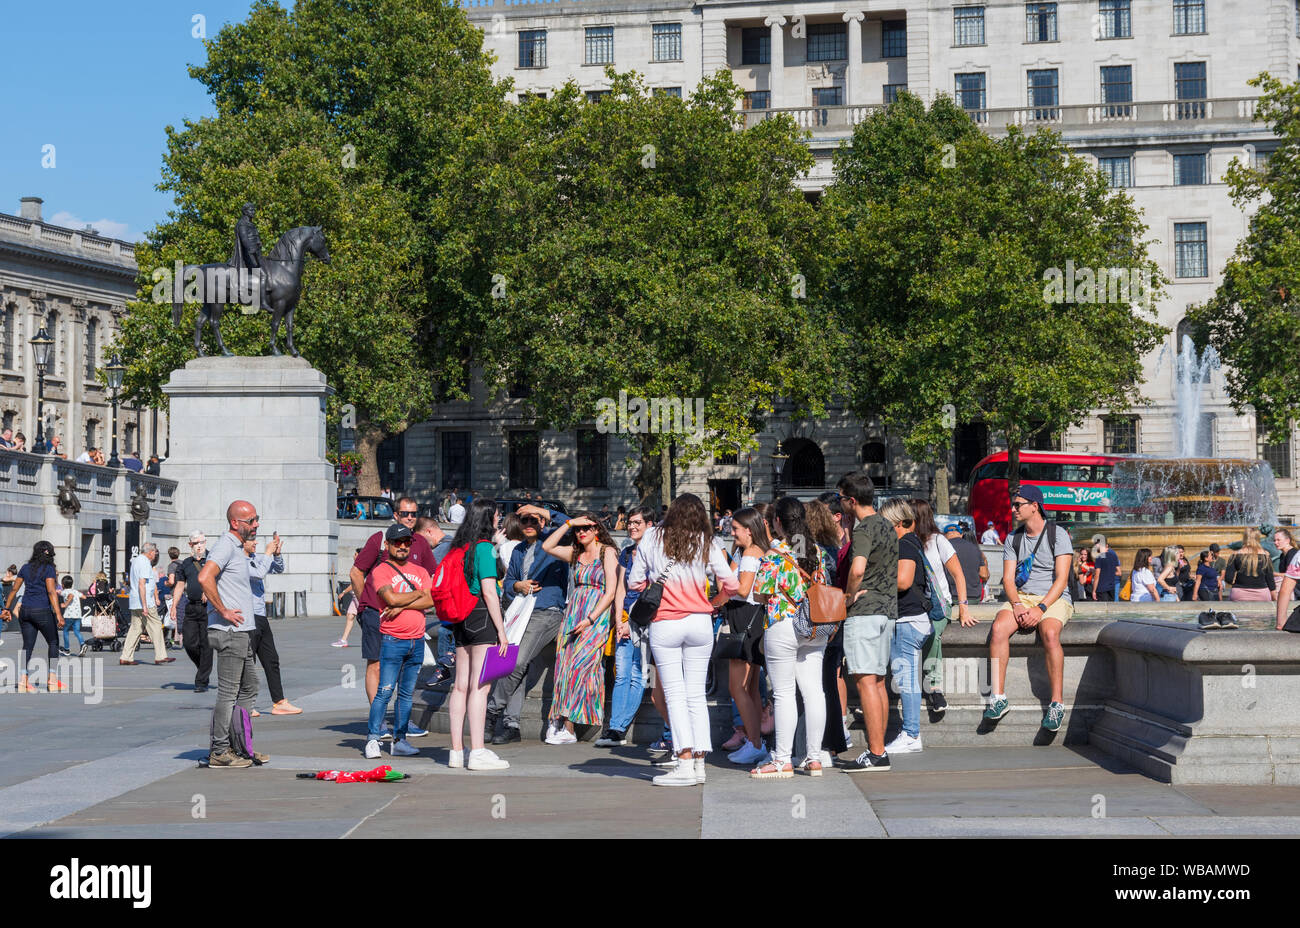 Gruppe von Touristen auf eine geführte Tour im Sommer auf dem Trafalgar Square, Charing Cross, Westminster, London, England, UK. Stockfoto